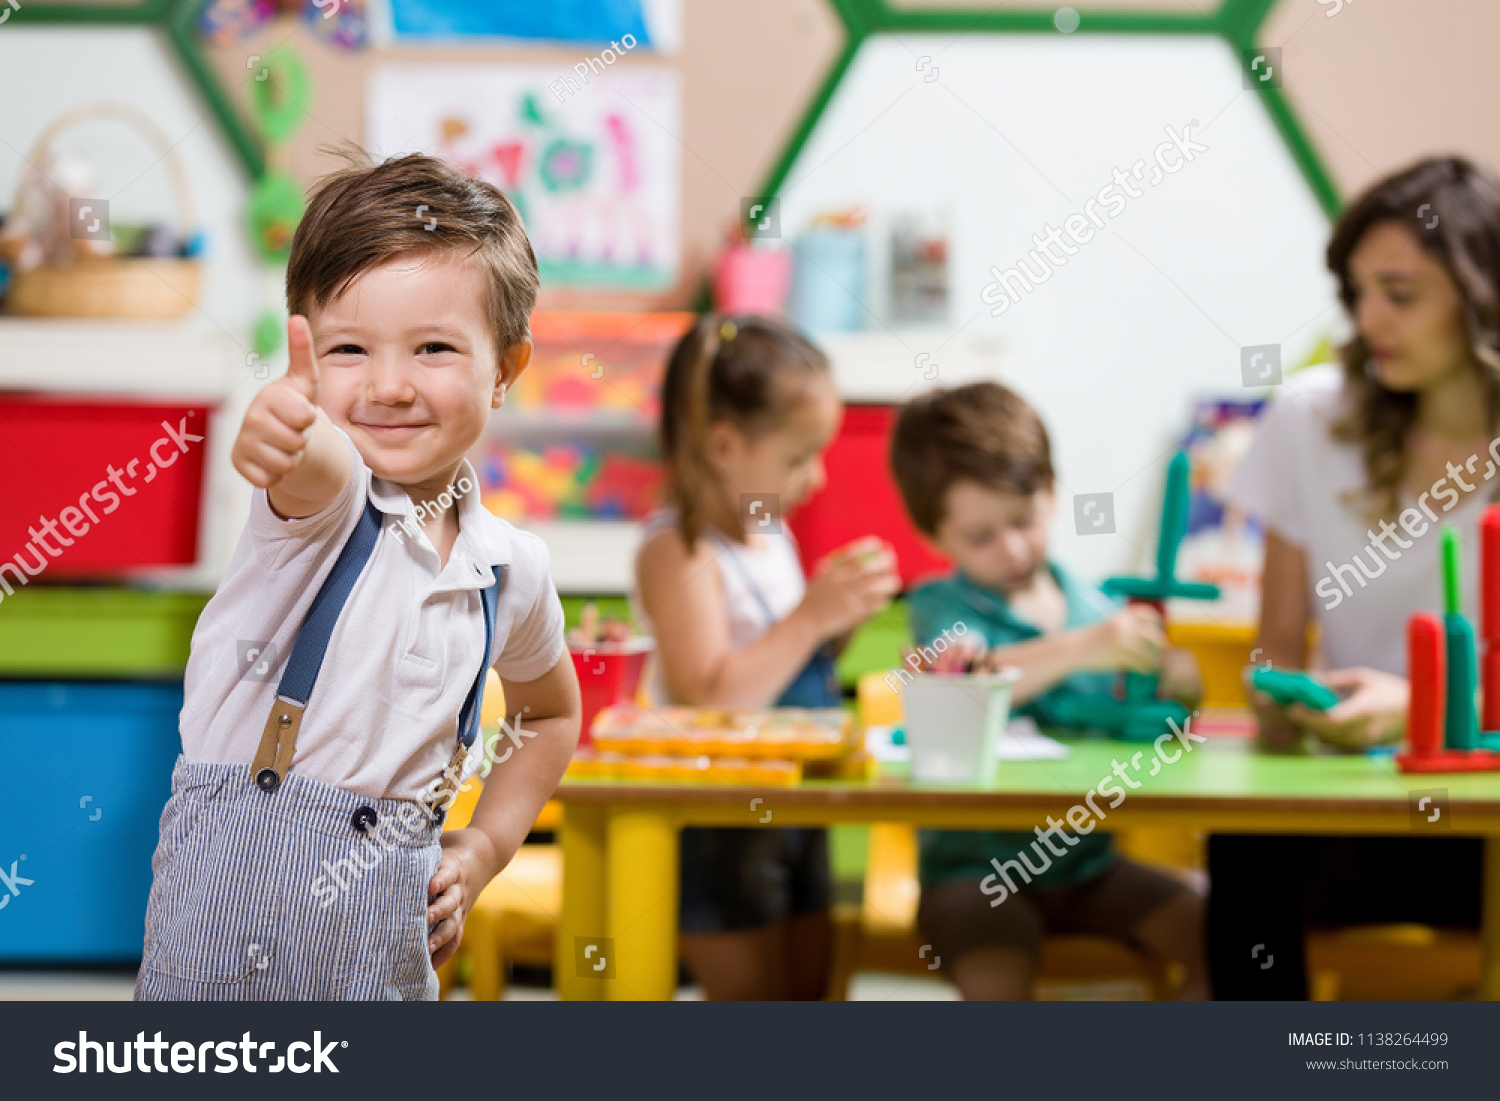 Preschool Children and Teacher in Classroom #1138264499